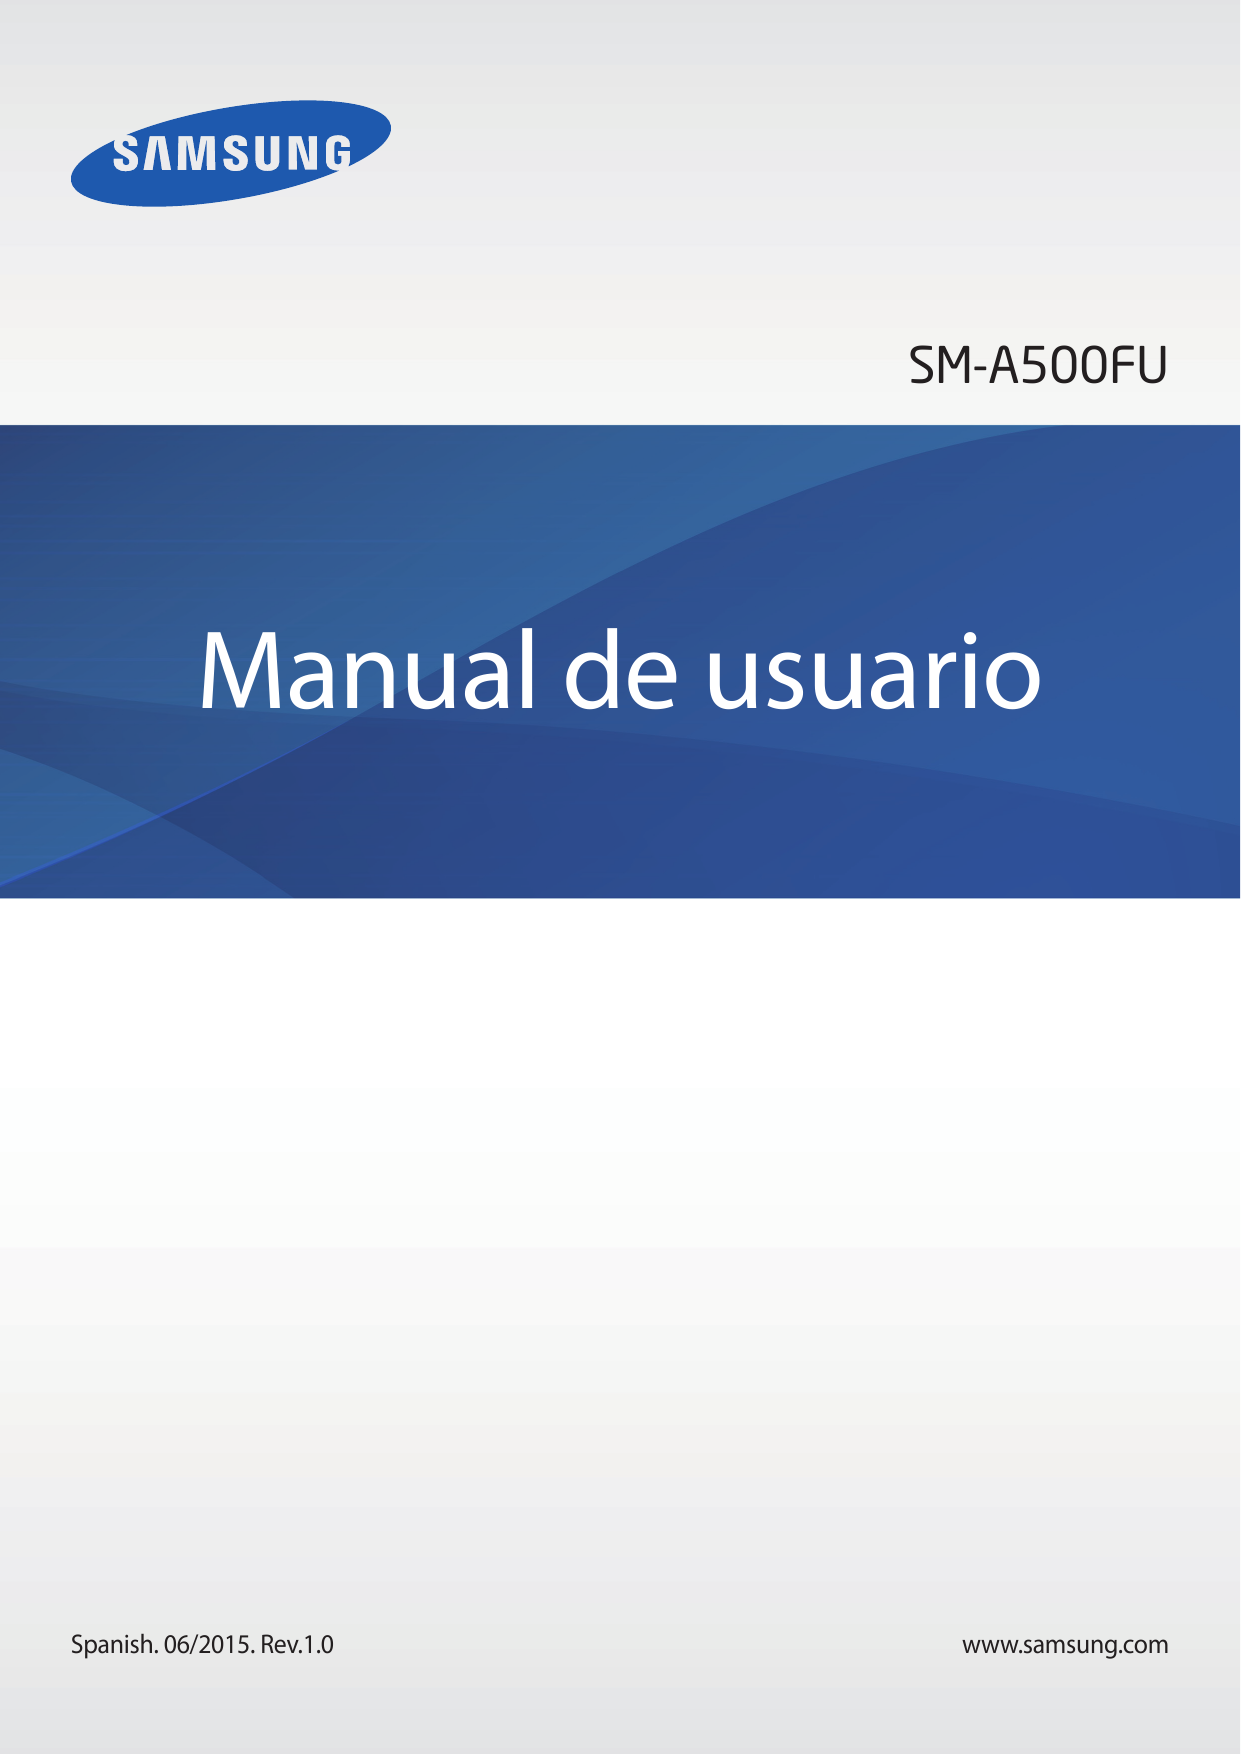 SM-A500FUManual de usuarioSpanish. 06/2015. Rev.1.0www.samsung.com